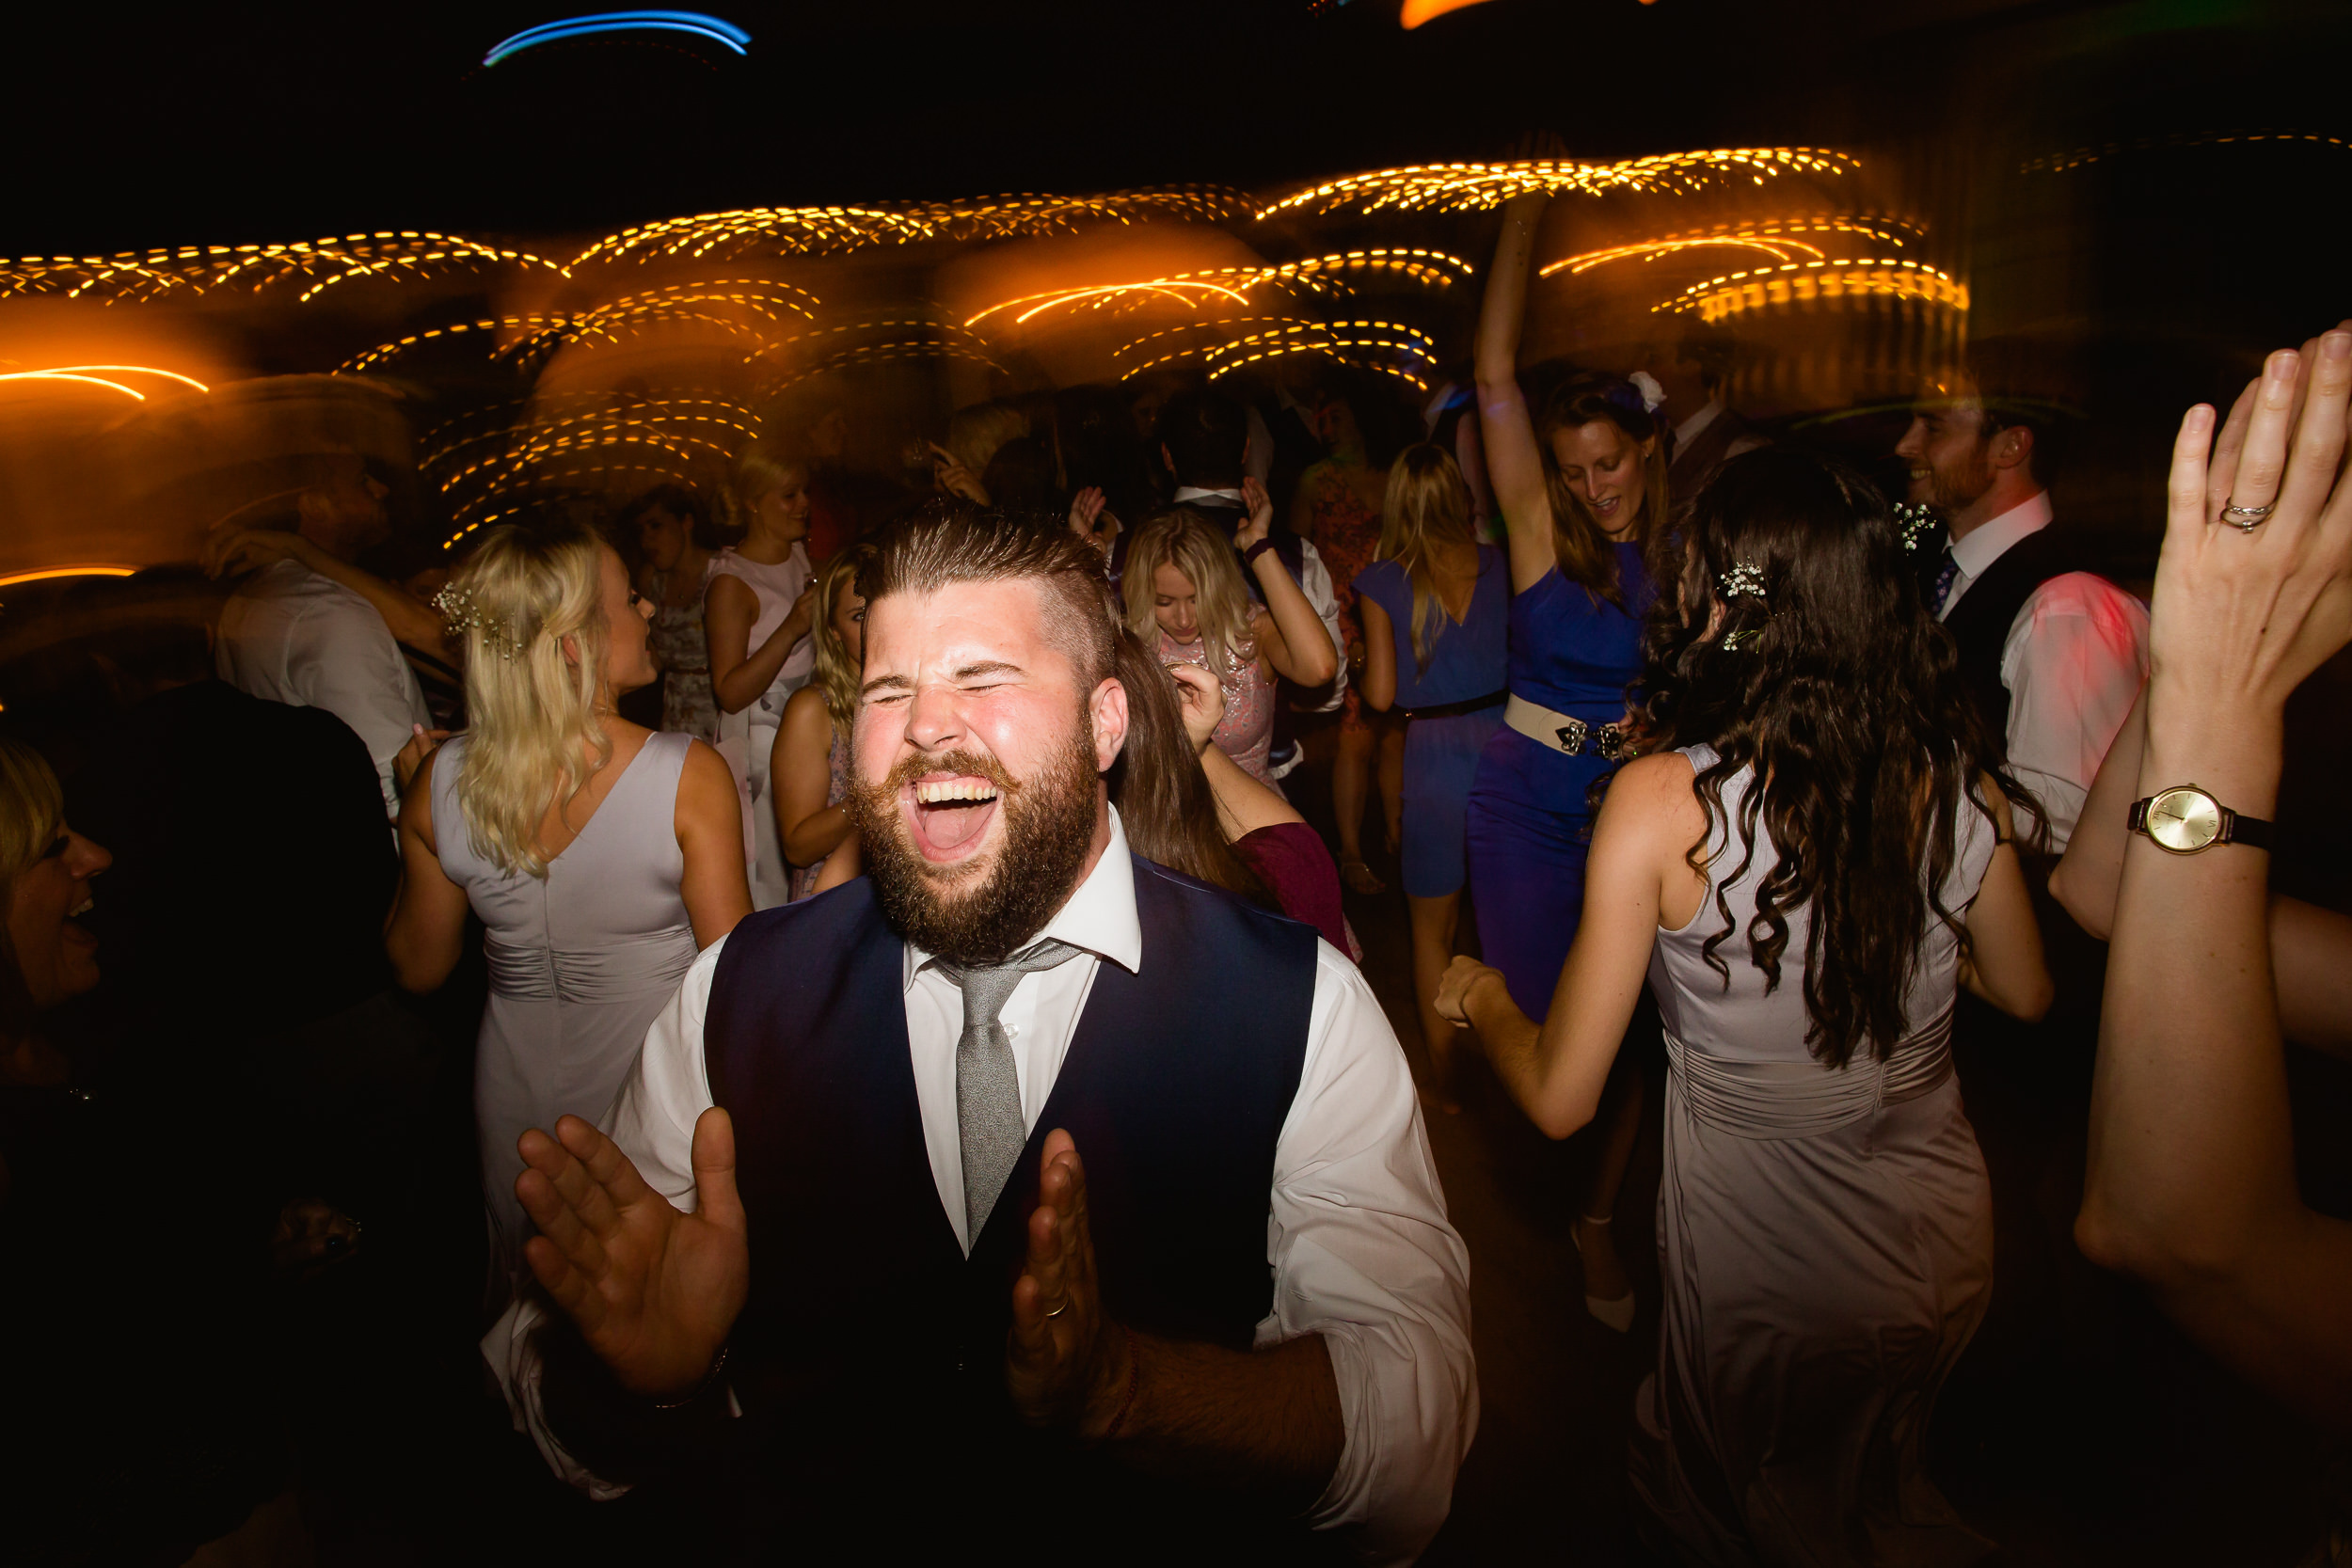 wedding dancefloor - dance off at a wedding - Welsh wedding - King Arthur hotel wedding wales